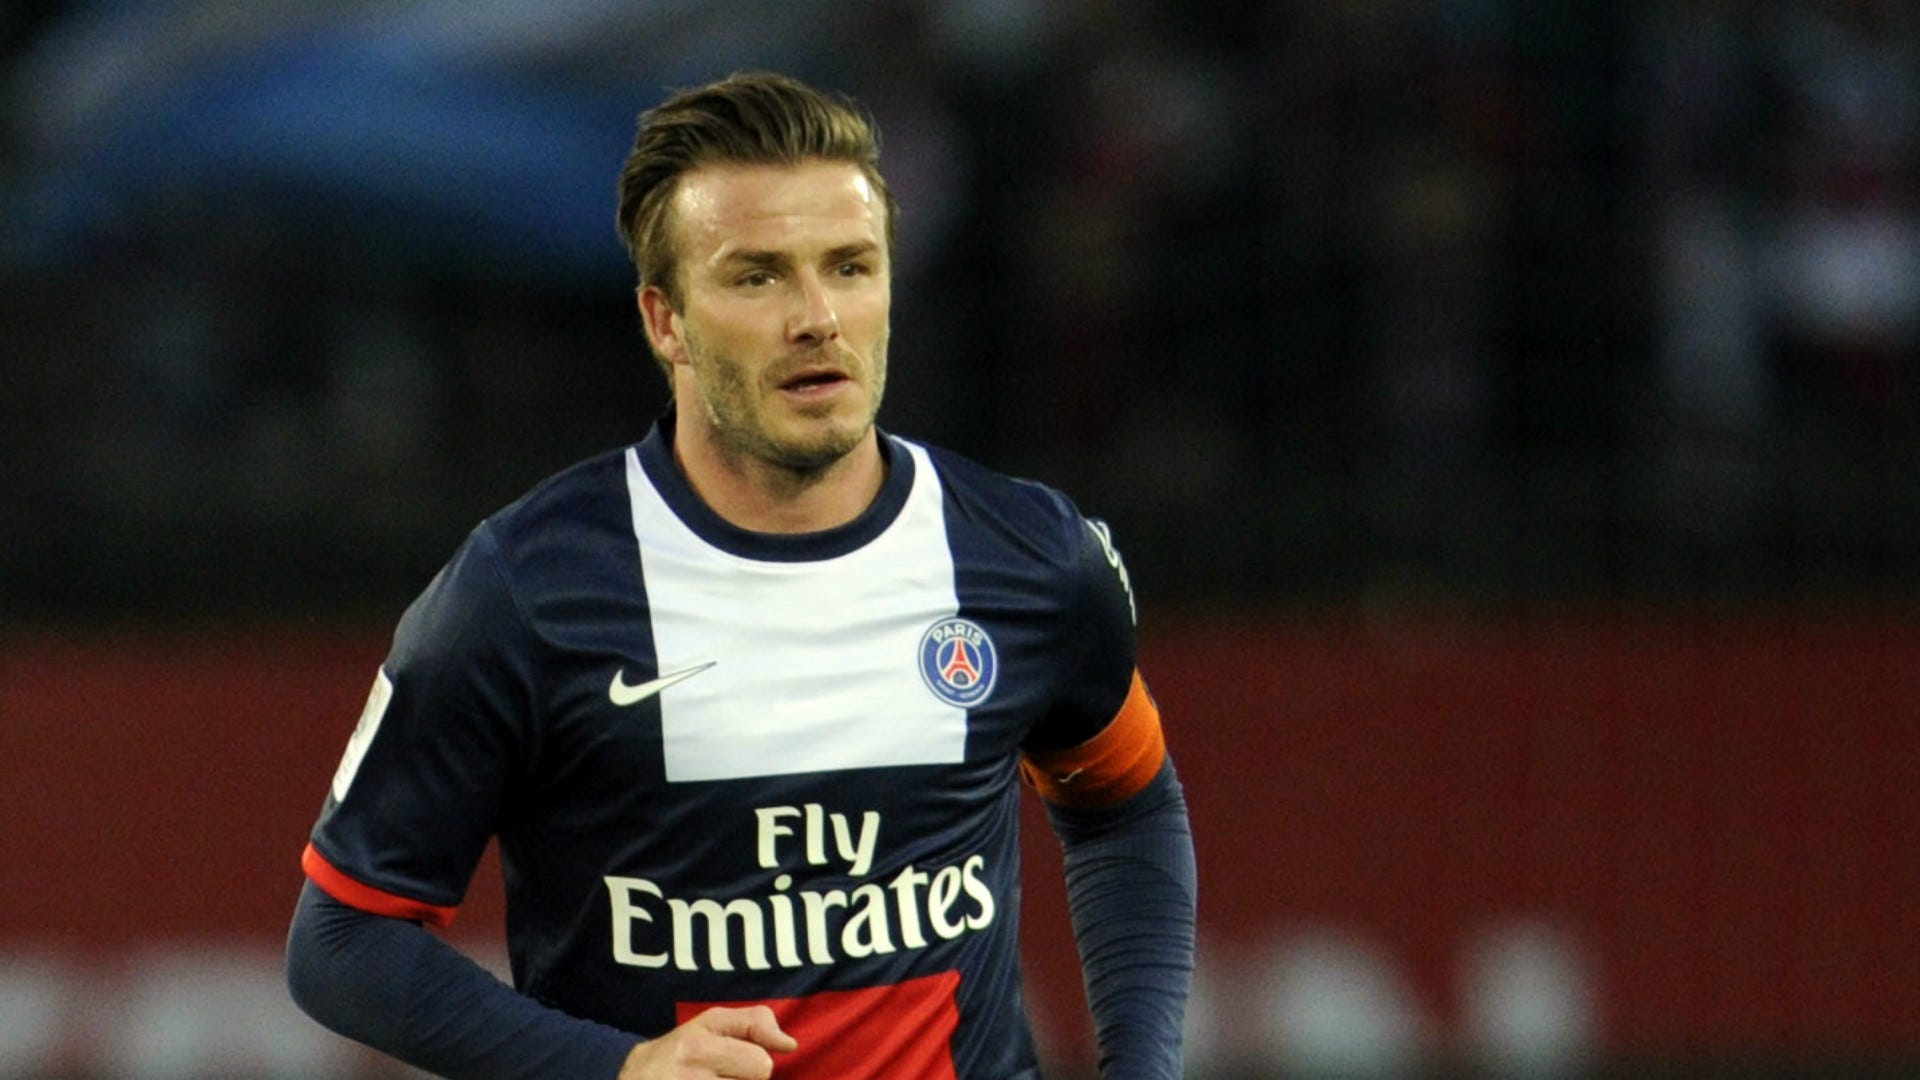 David Beckham PSG Ligue 1 2013